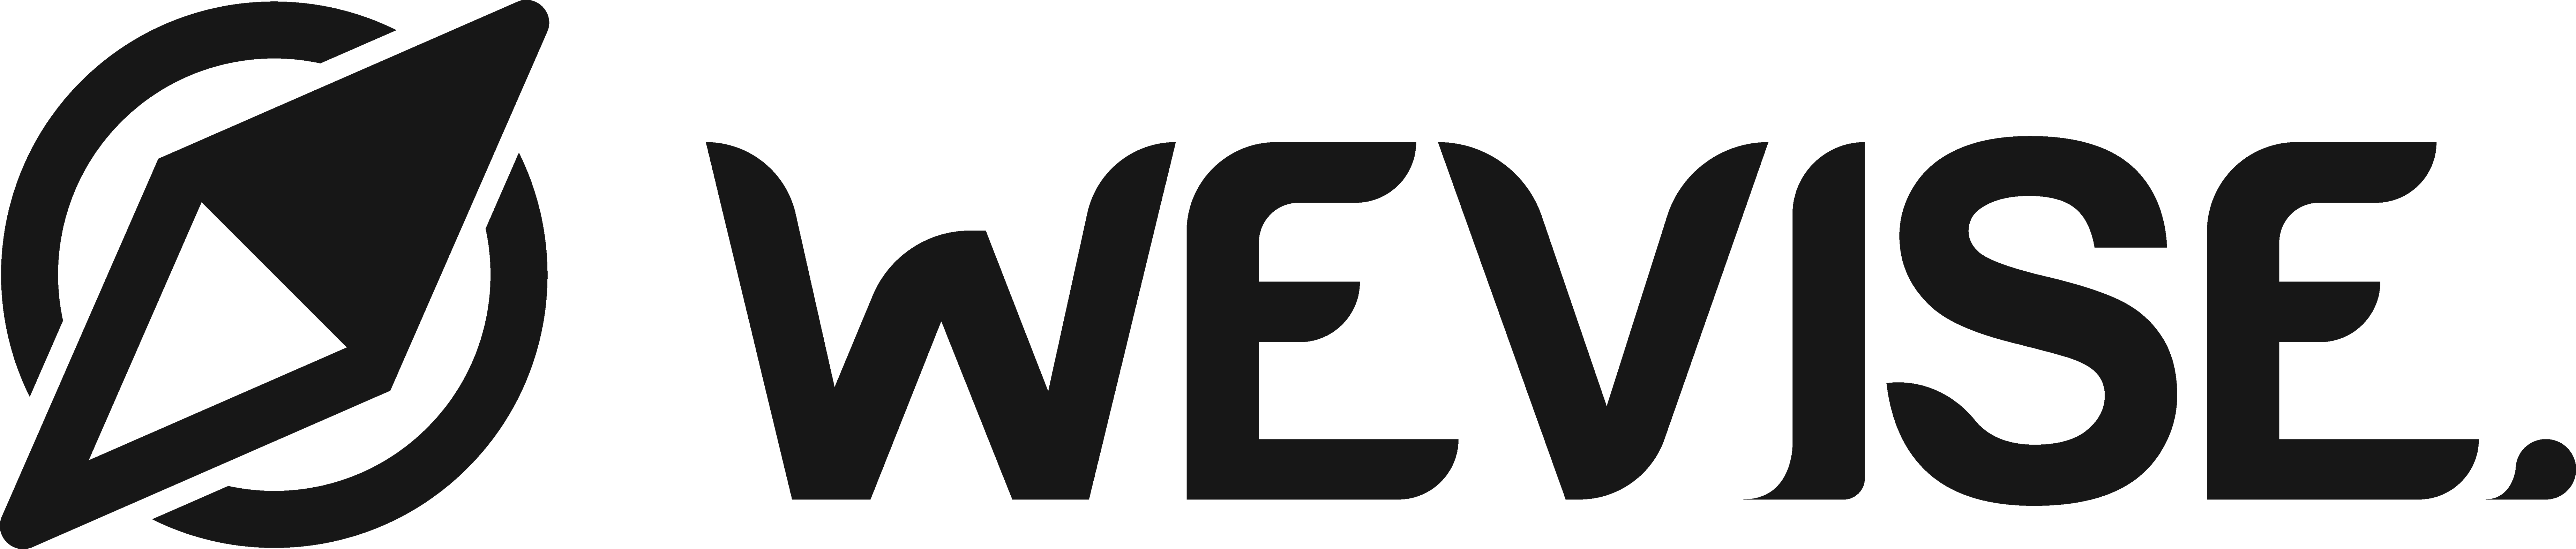 wevise-logo-black-footer2